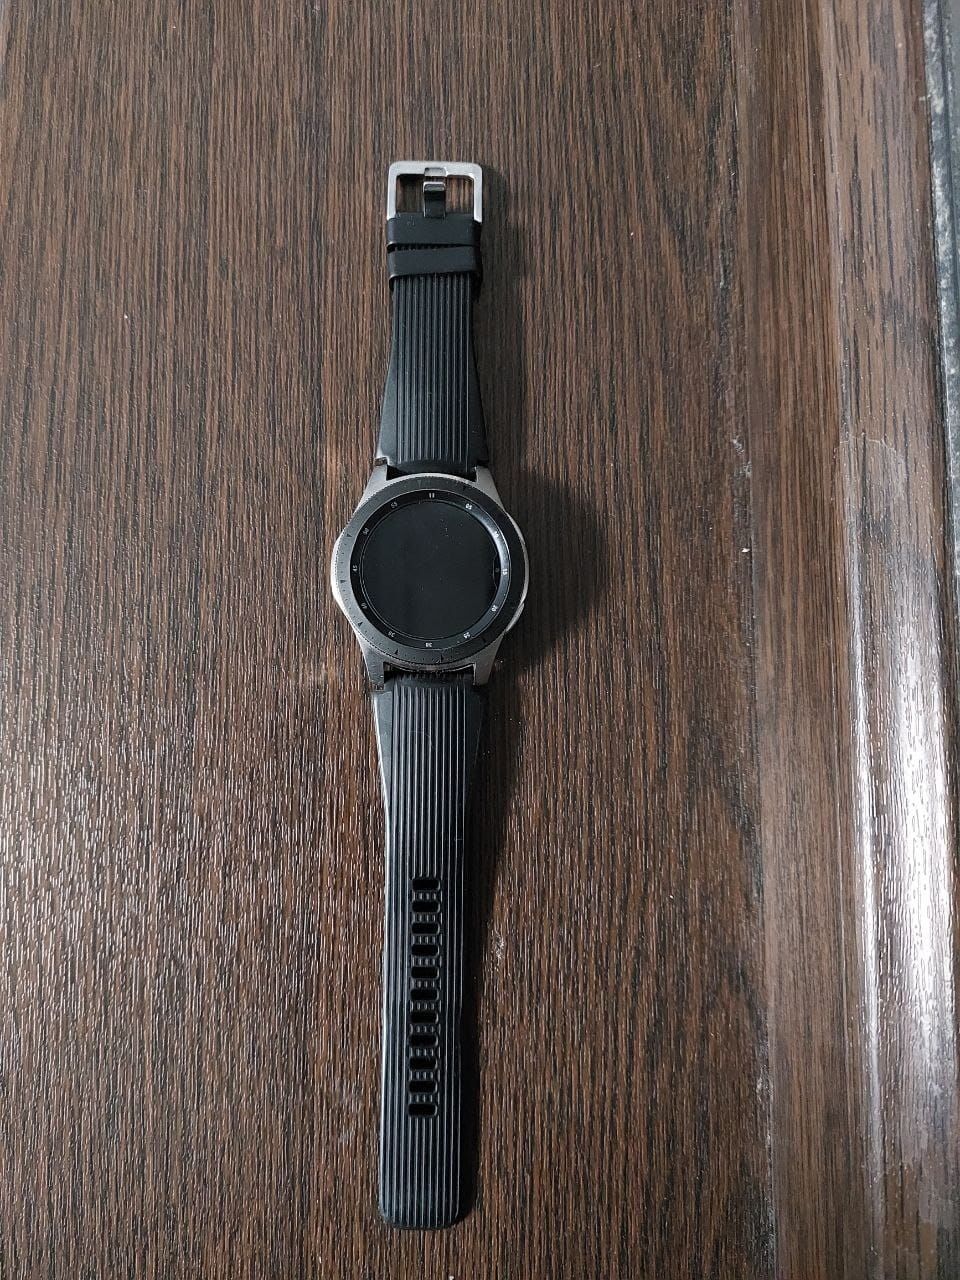 Galaxy watch оригинал новые с коробкой